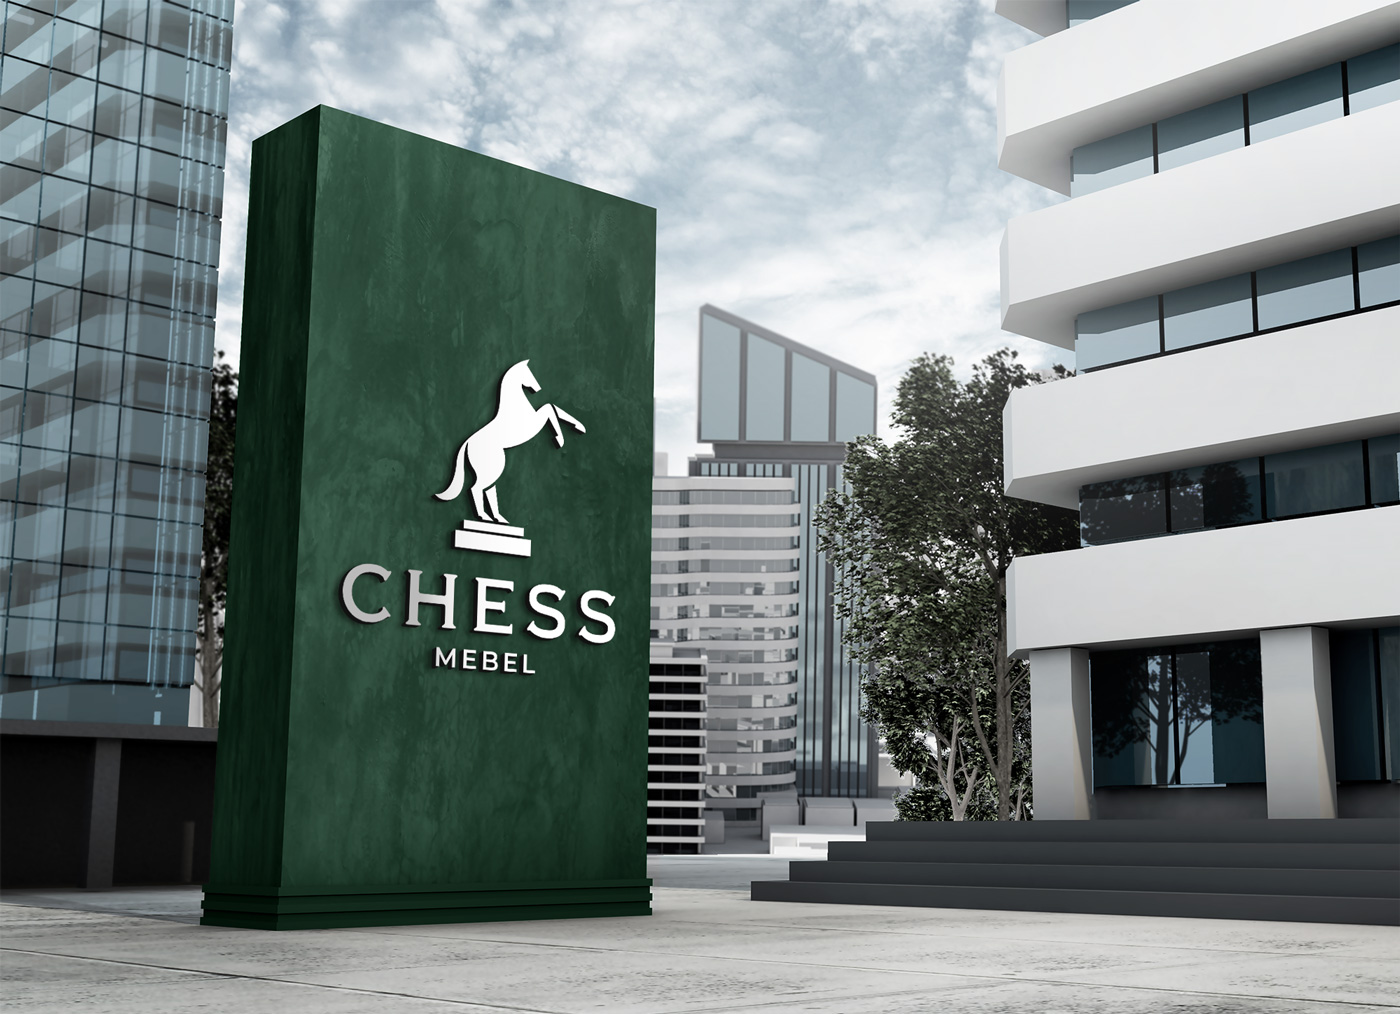 Chess Mebel - Branding